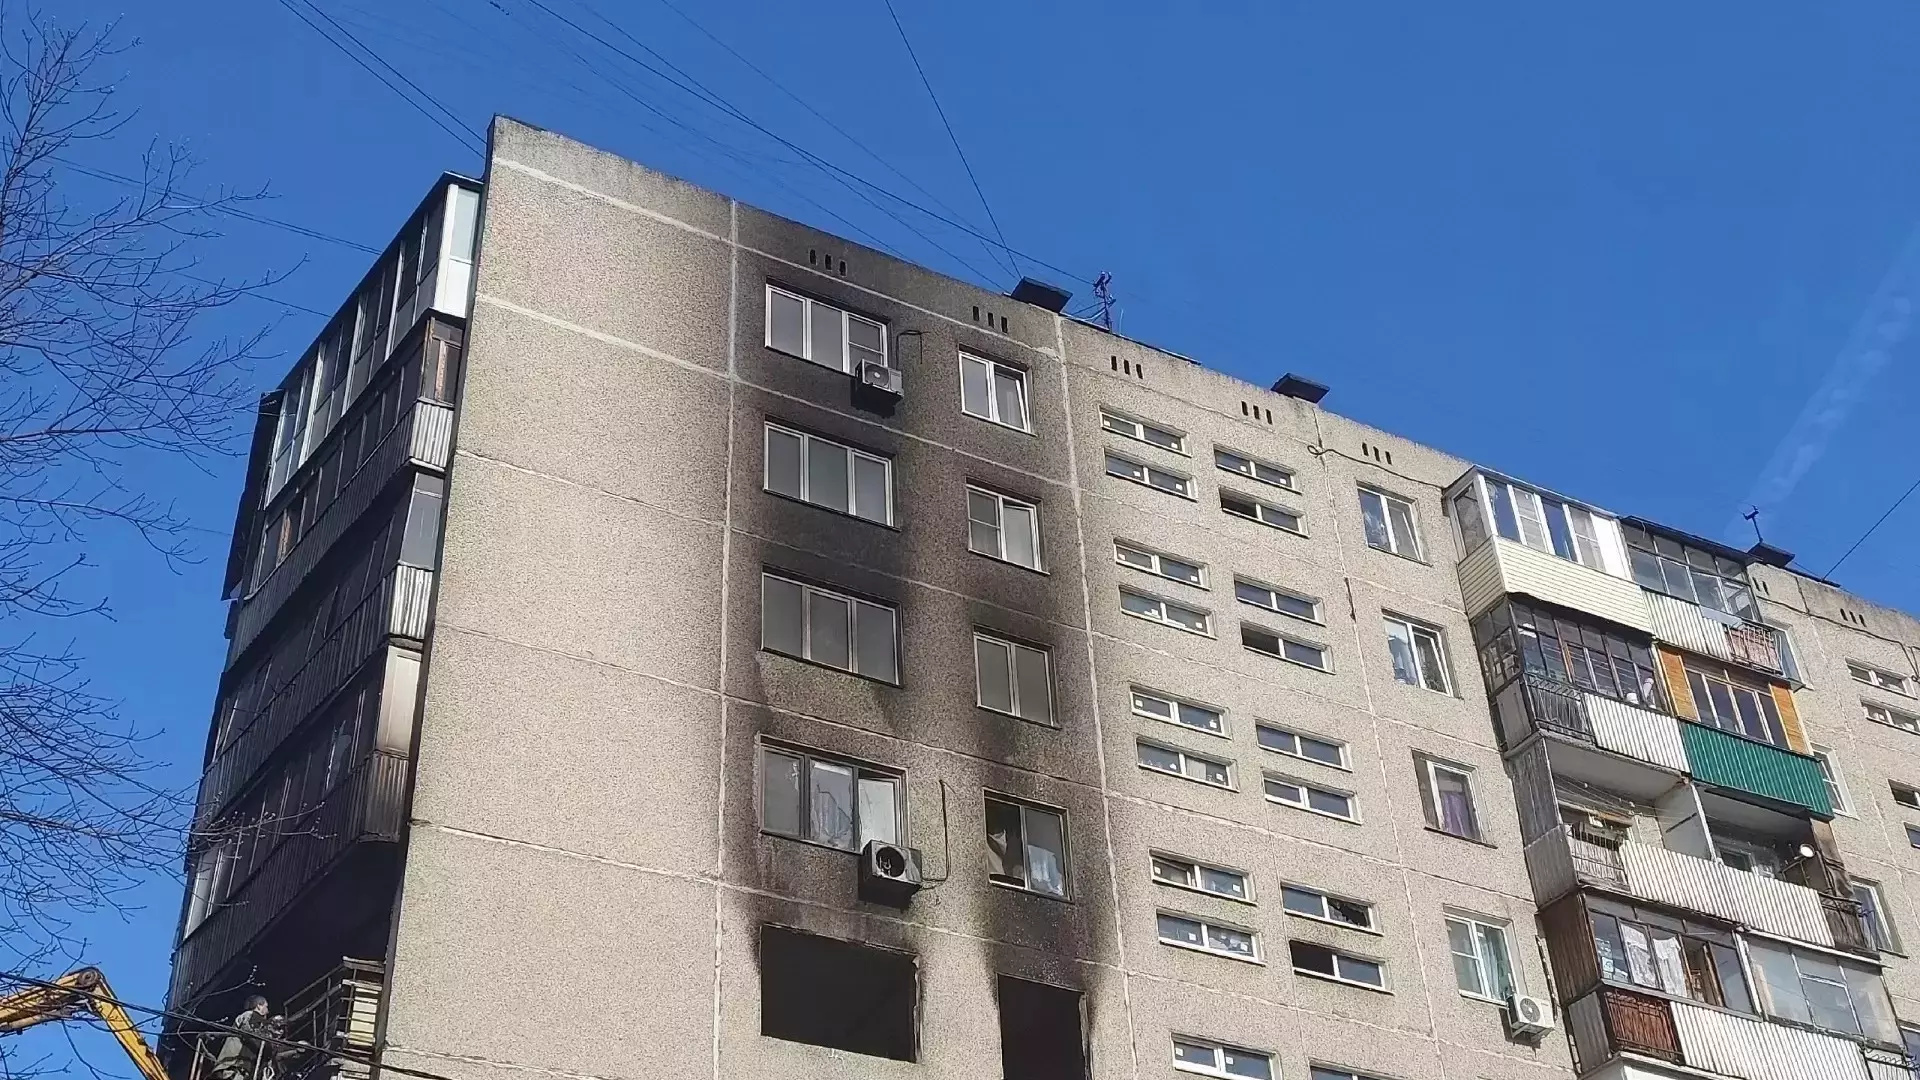 Три квартиры признаны непригодными для проживания после взрыва на Фучика